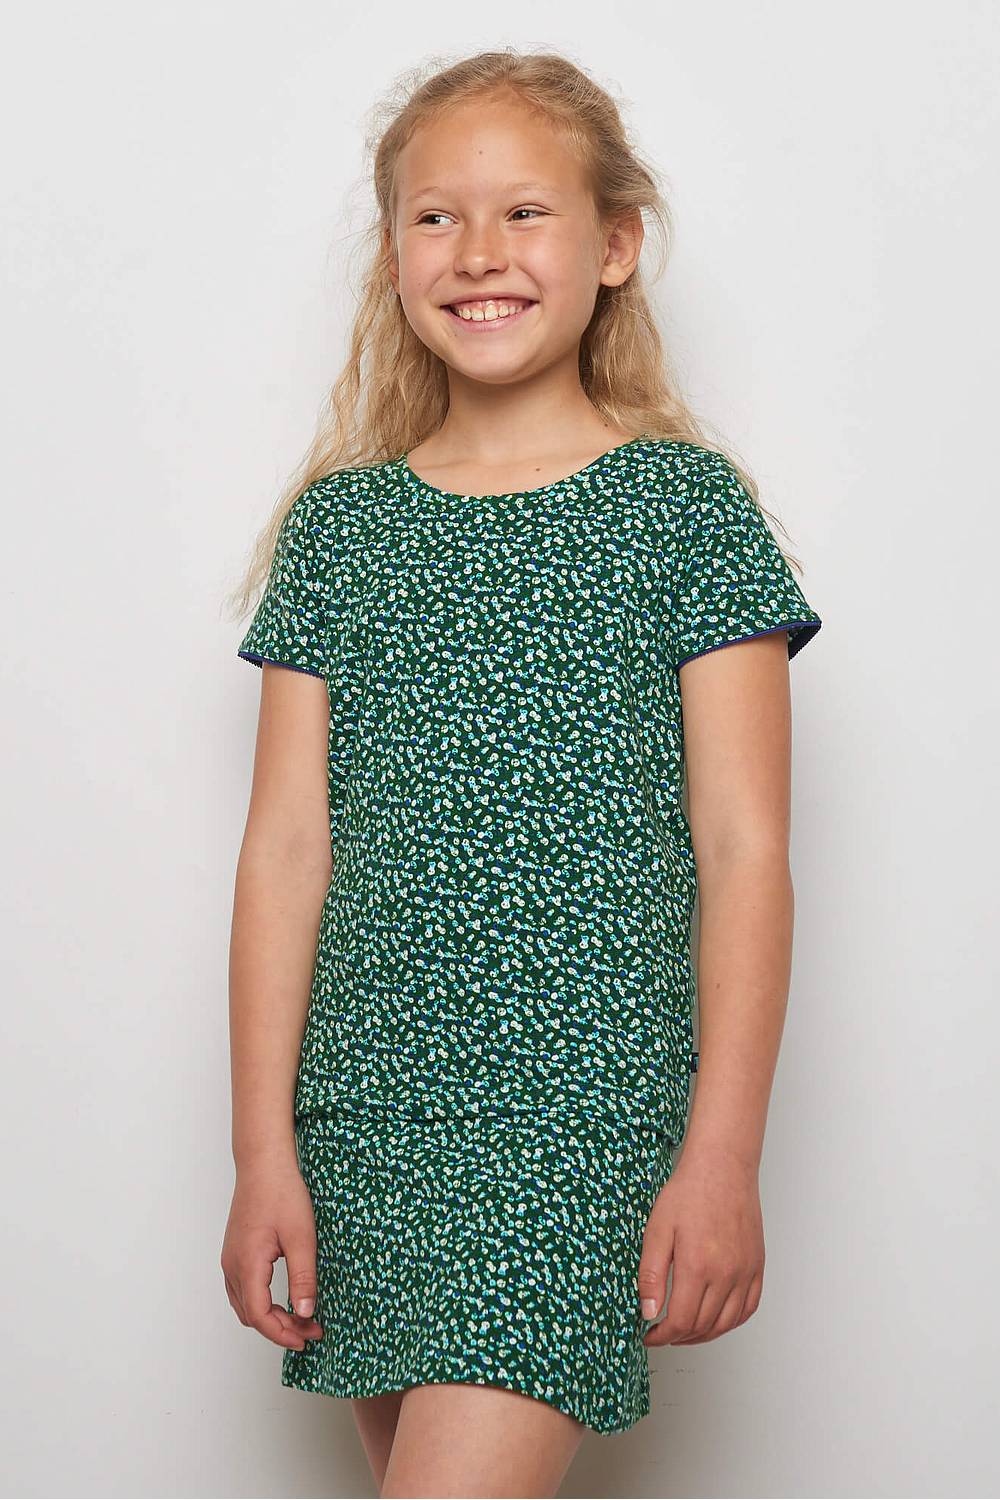 Kids Jersey-Shirt Lilly Green Peas (Gots) 104/110